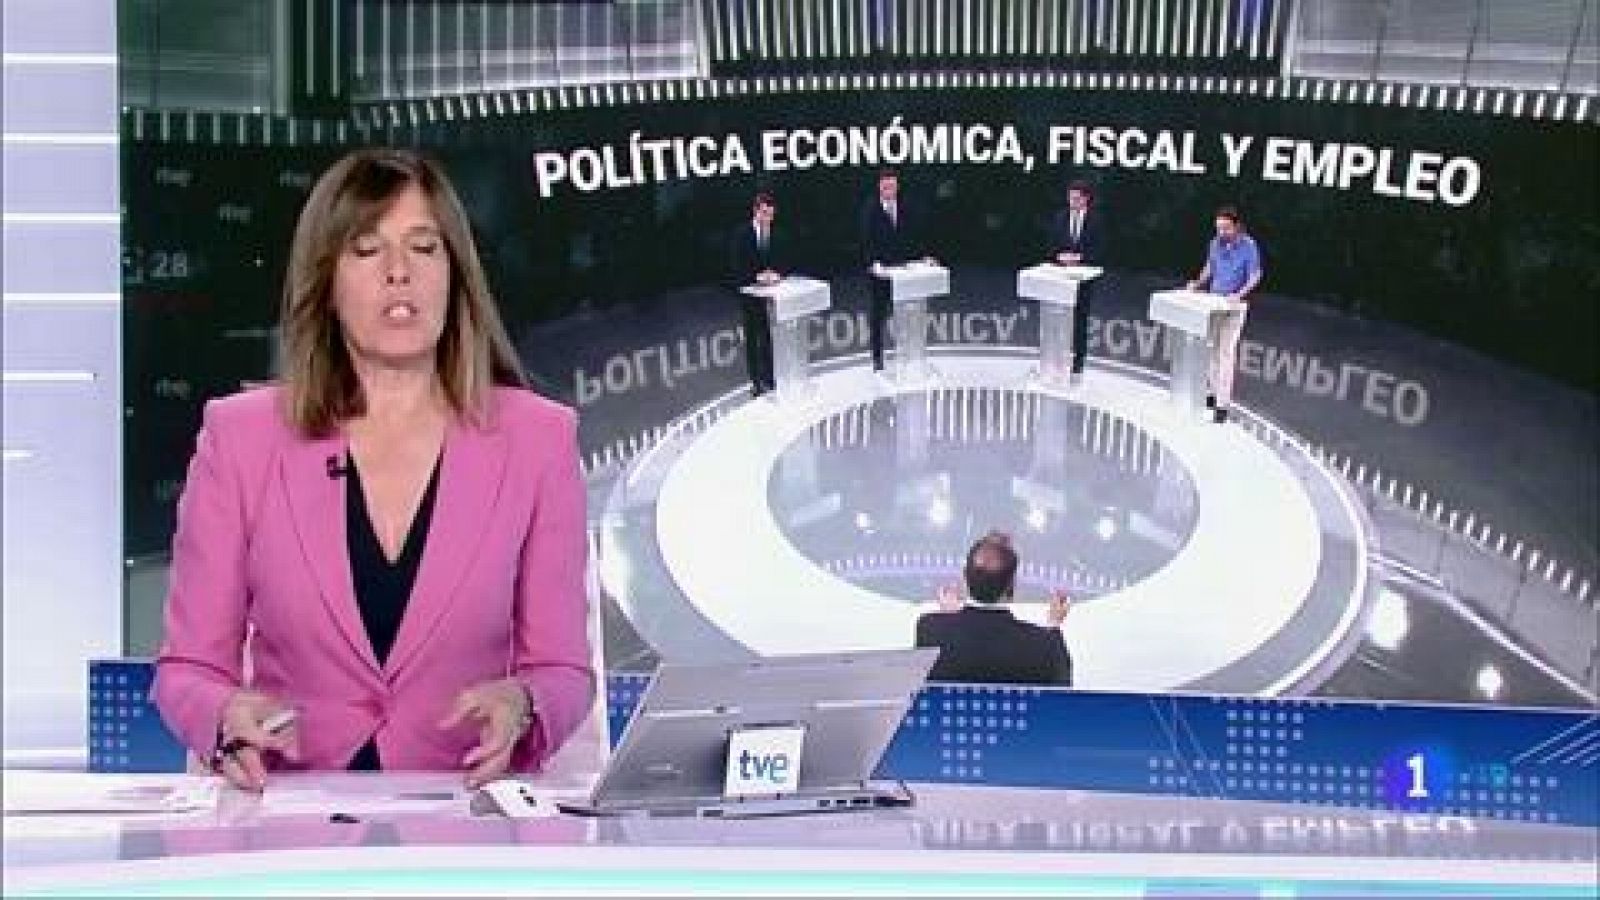 Elecciones generales 2019: El tono más bronco del debate en RTVE llegó al hablar de Cataluña